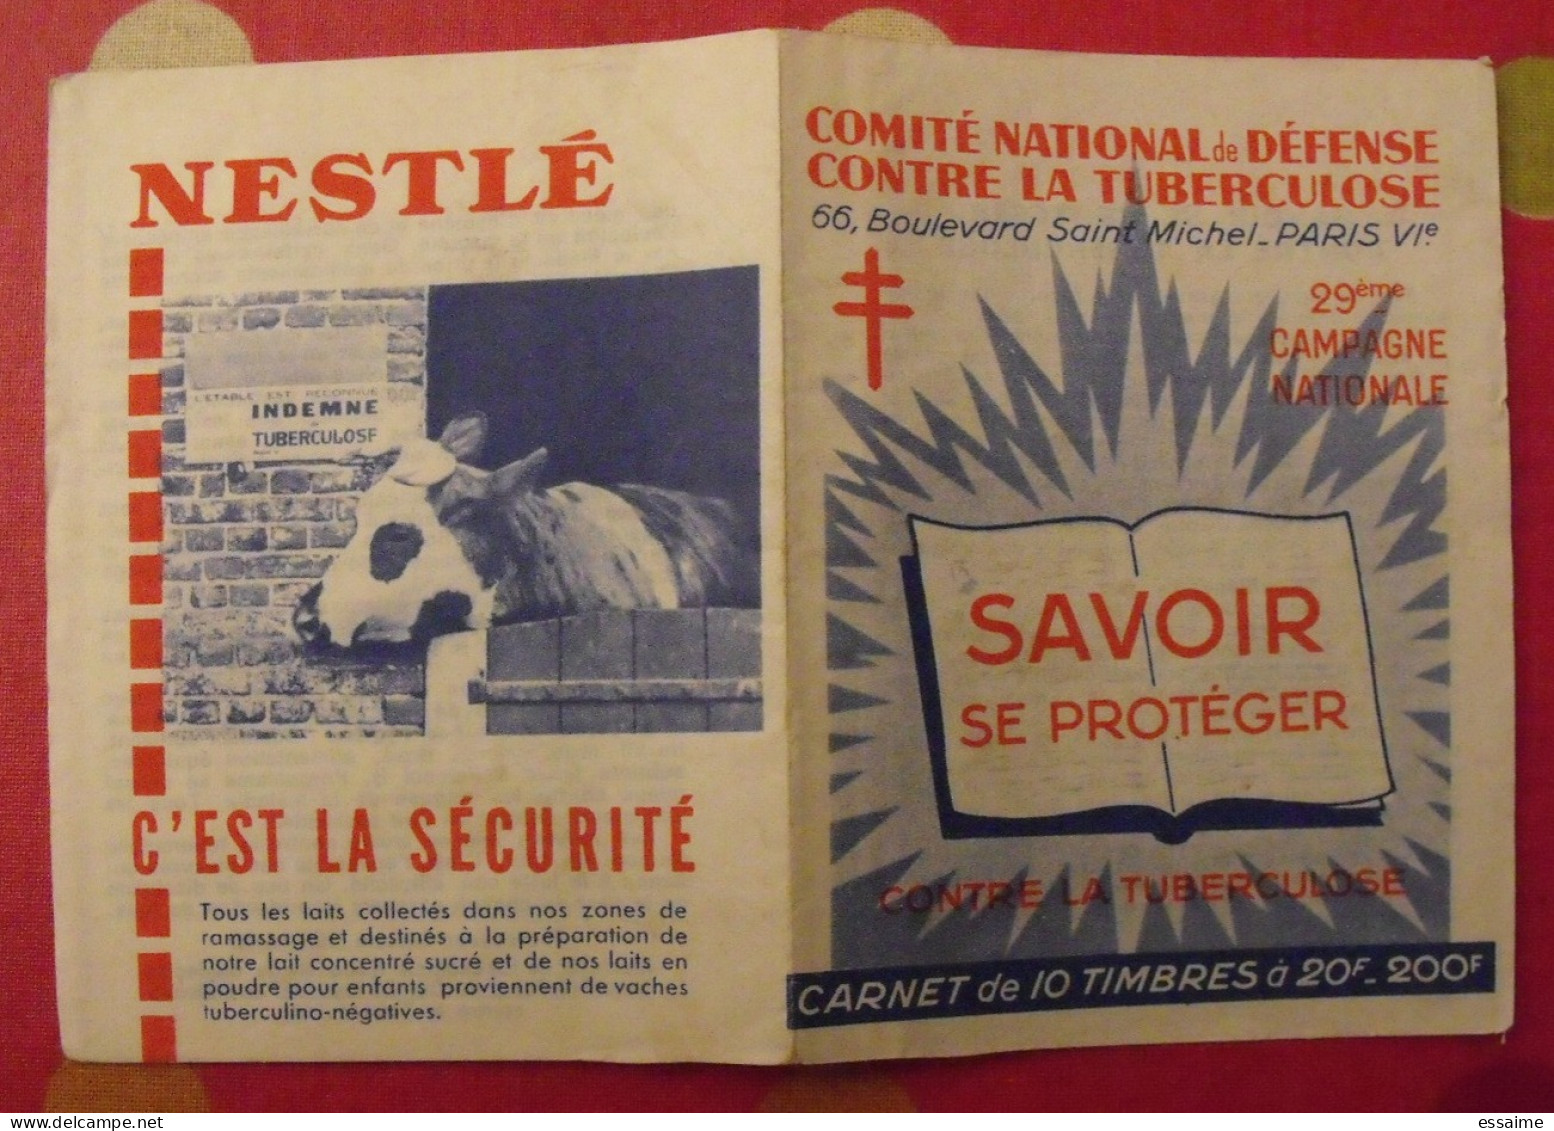 Carnet De Timbres Antituberculeux 1959-60. Pub Nestlé . Tuberculose Anti-tuberculeux. - Antituberculeux